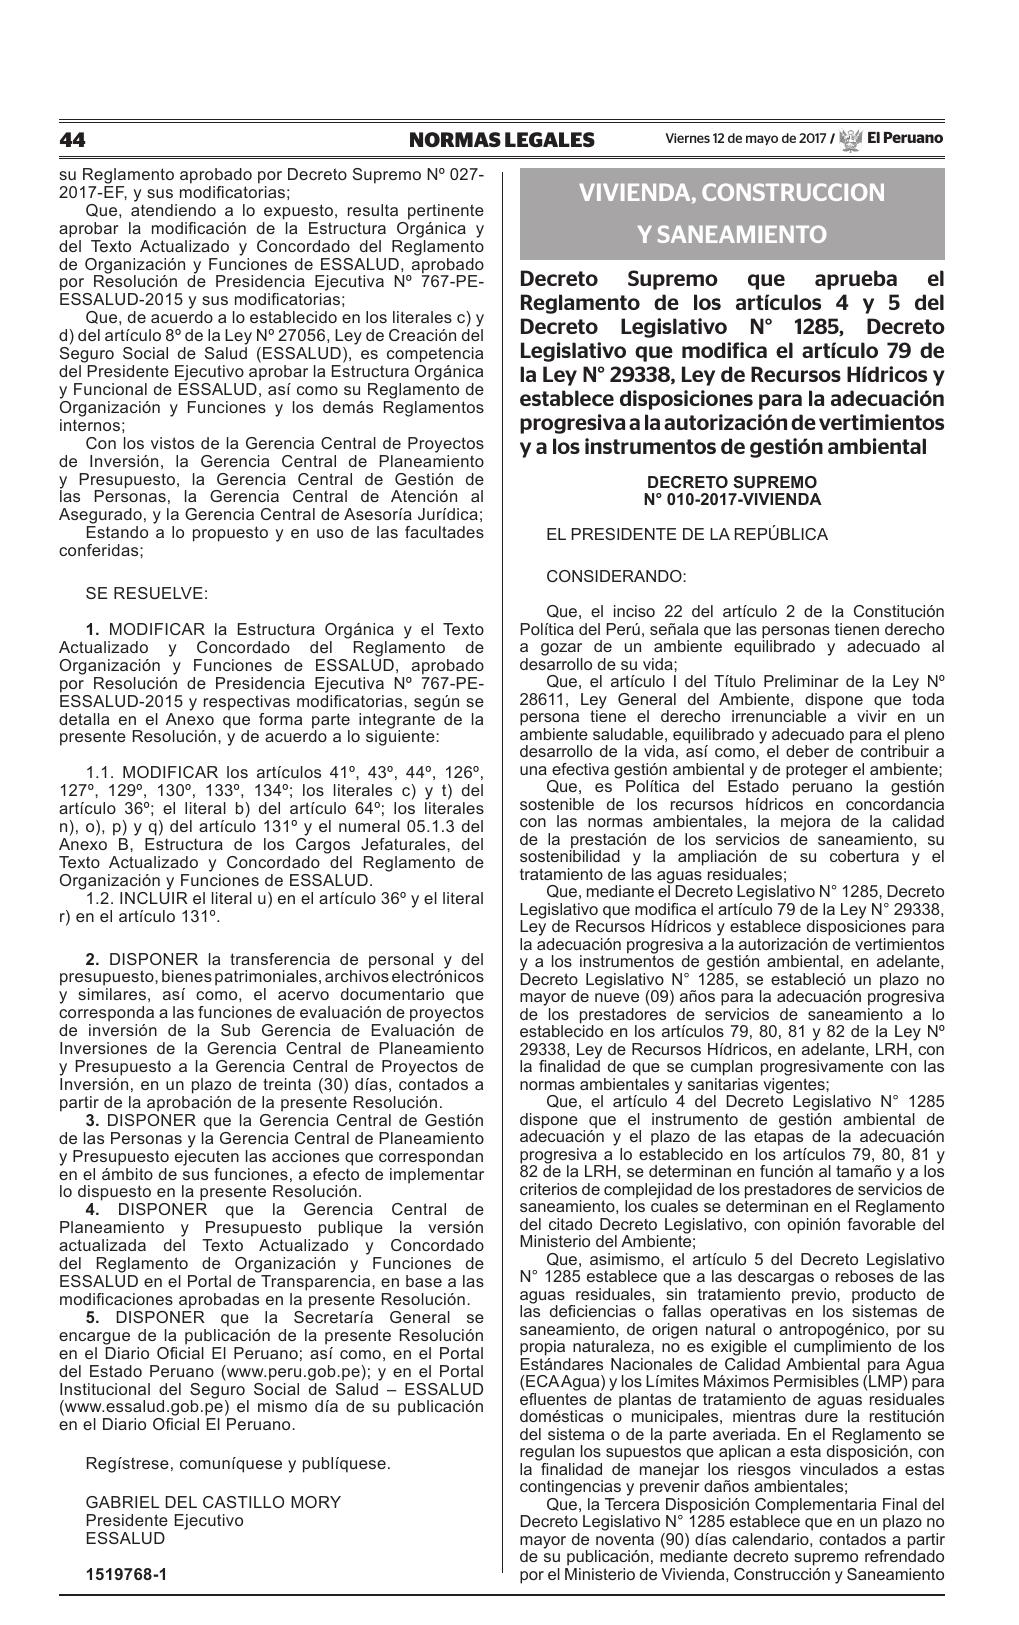 Decreto Supremo Que Aprueba El Reglamento De Los Artículos 4 Y 5 Del Decreto Legislativo N° 1285 1966